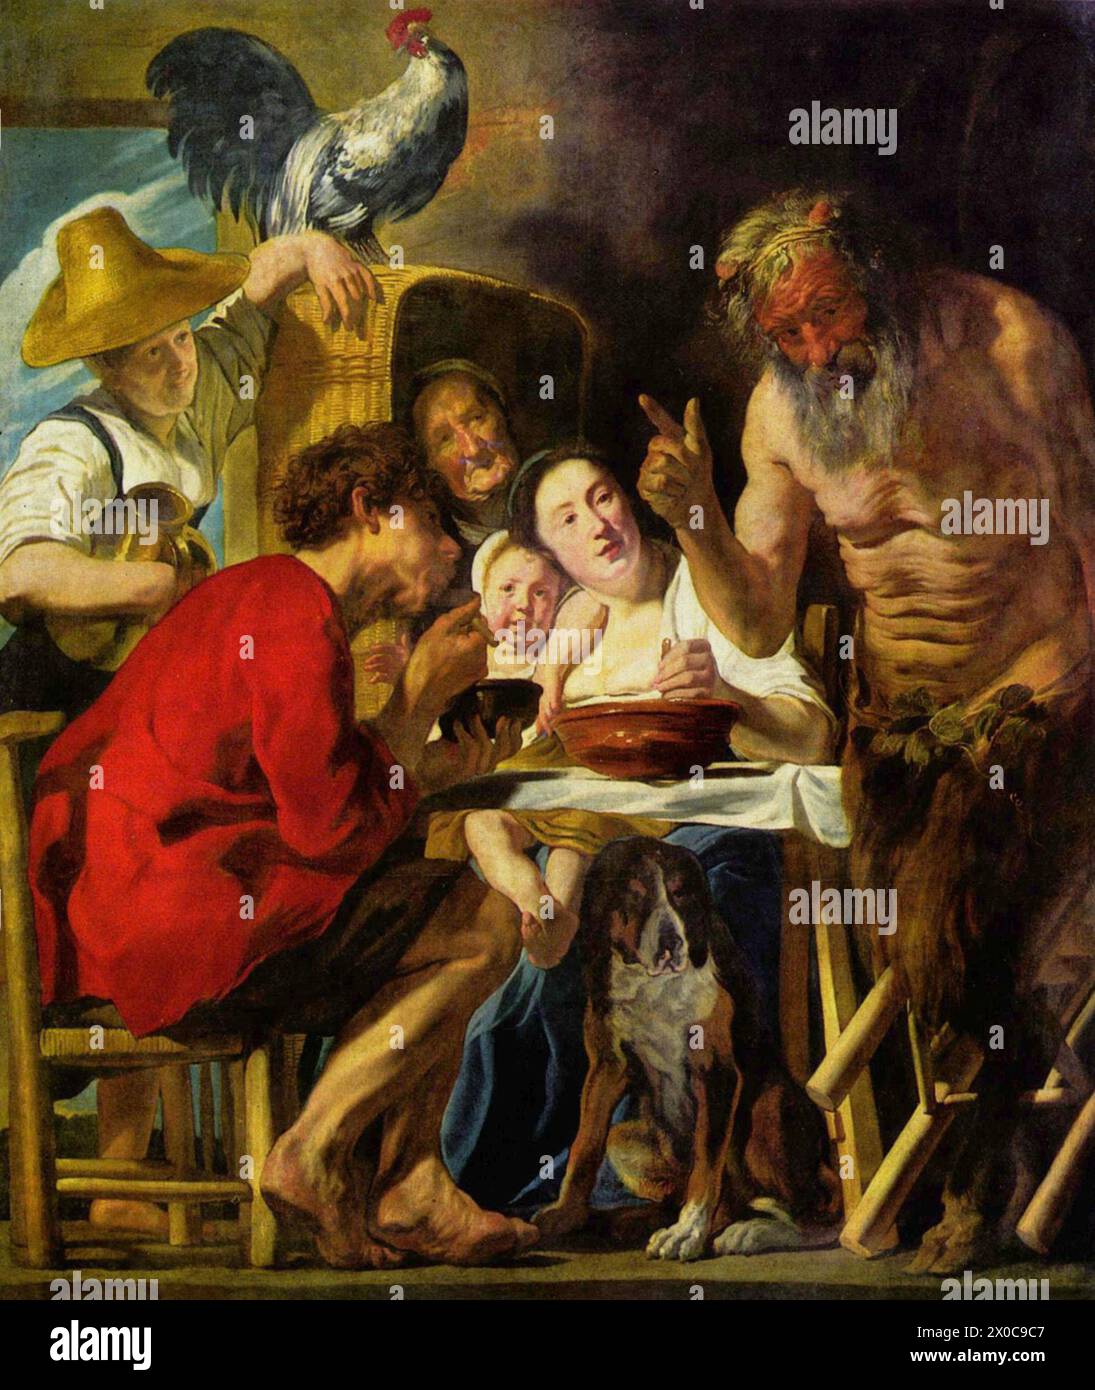 Der Satyr und der Bauer oder der Satyr und die Bauernfamilie ist der Titel, der häufig für eine Reihe von Gemälden des flämischen Barockmalers Jacob Jordaens Kassel vergeben wird Stockfoto